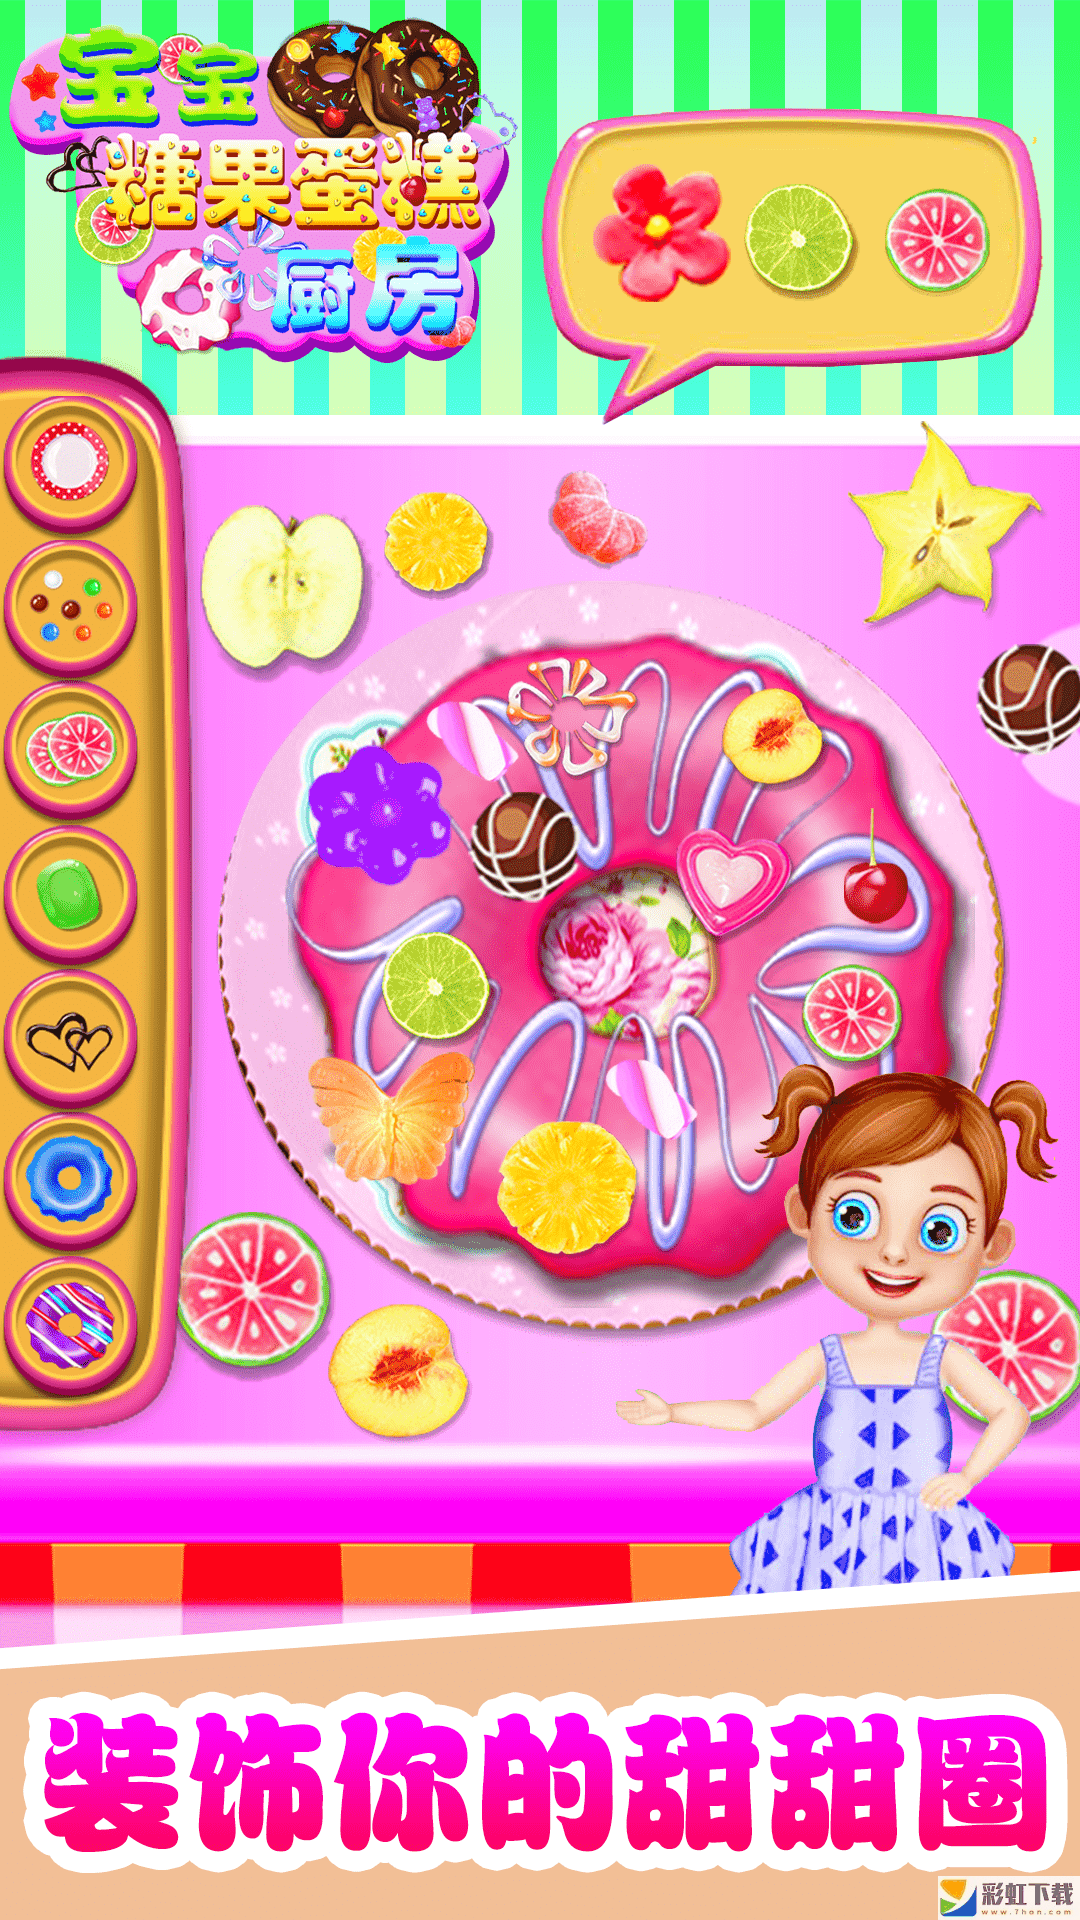 宝宝糖果糖糕厨房ios版糖糕厨房游戏正式版下载-宝宝糖果糖糕厨房全食材解锁ios版v1.0预约